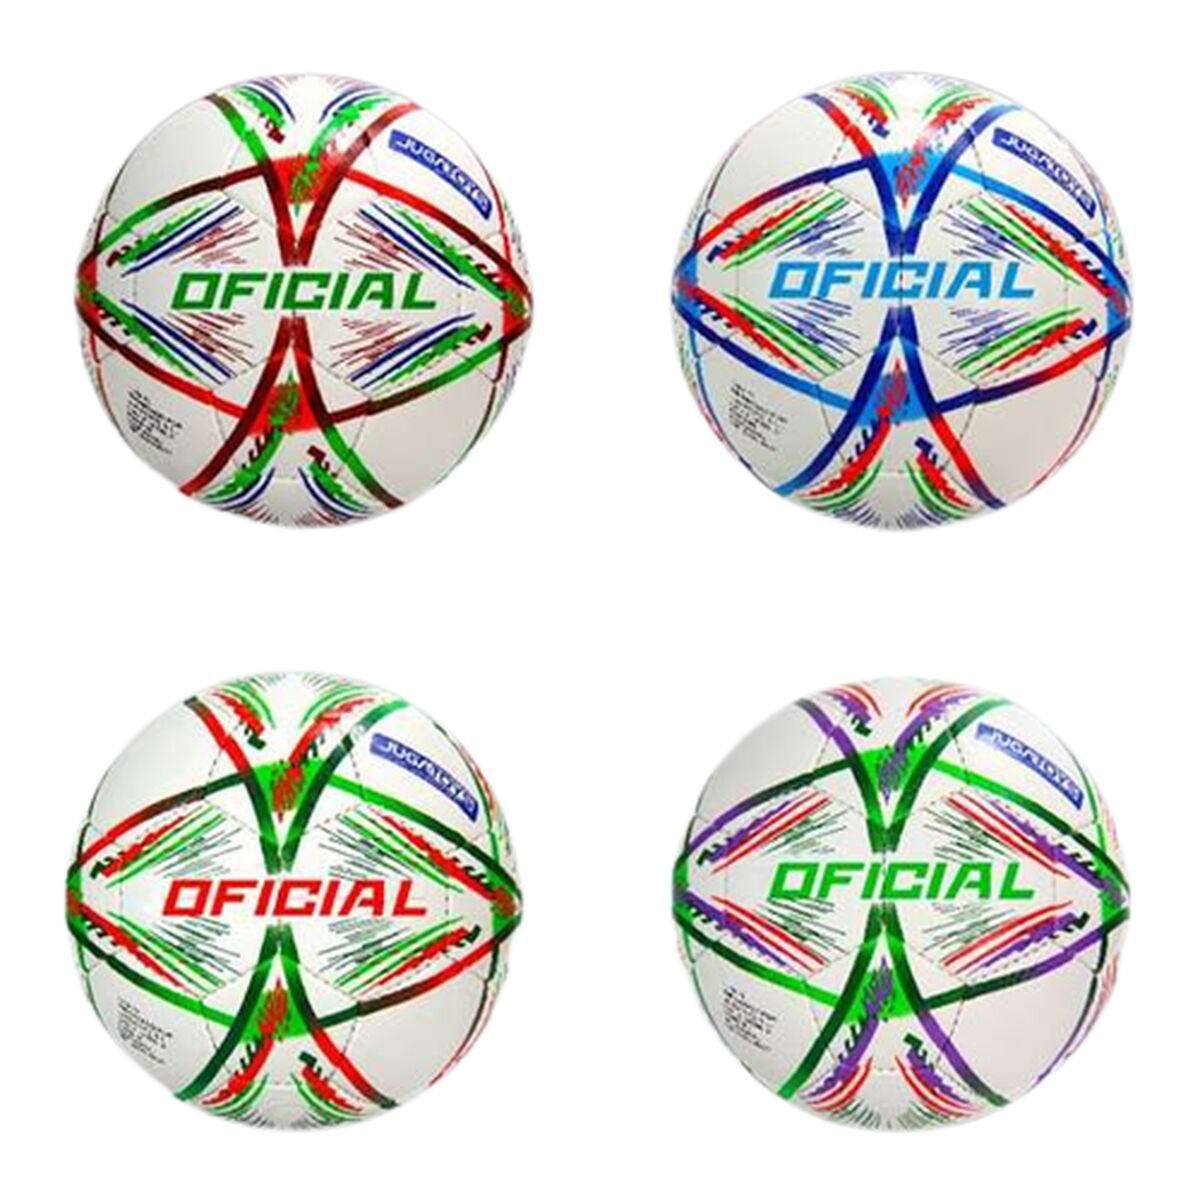 Jugatoys Fußball Fussball Oficial 23 cm